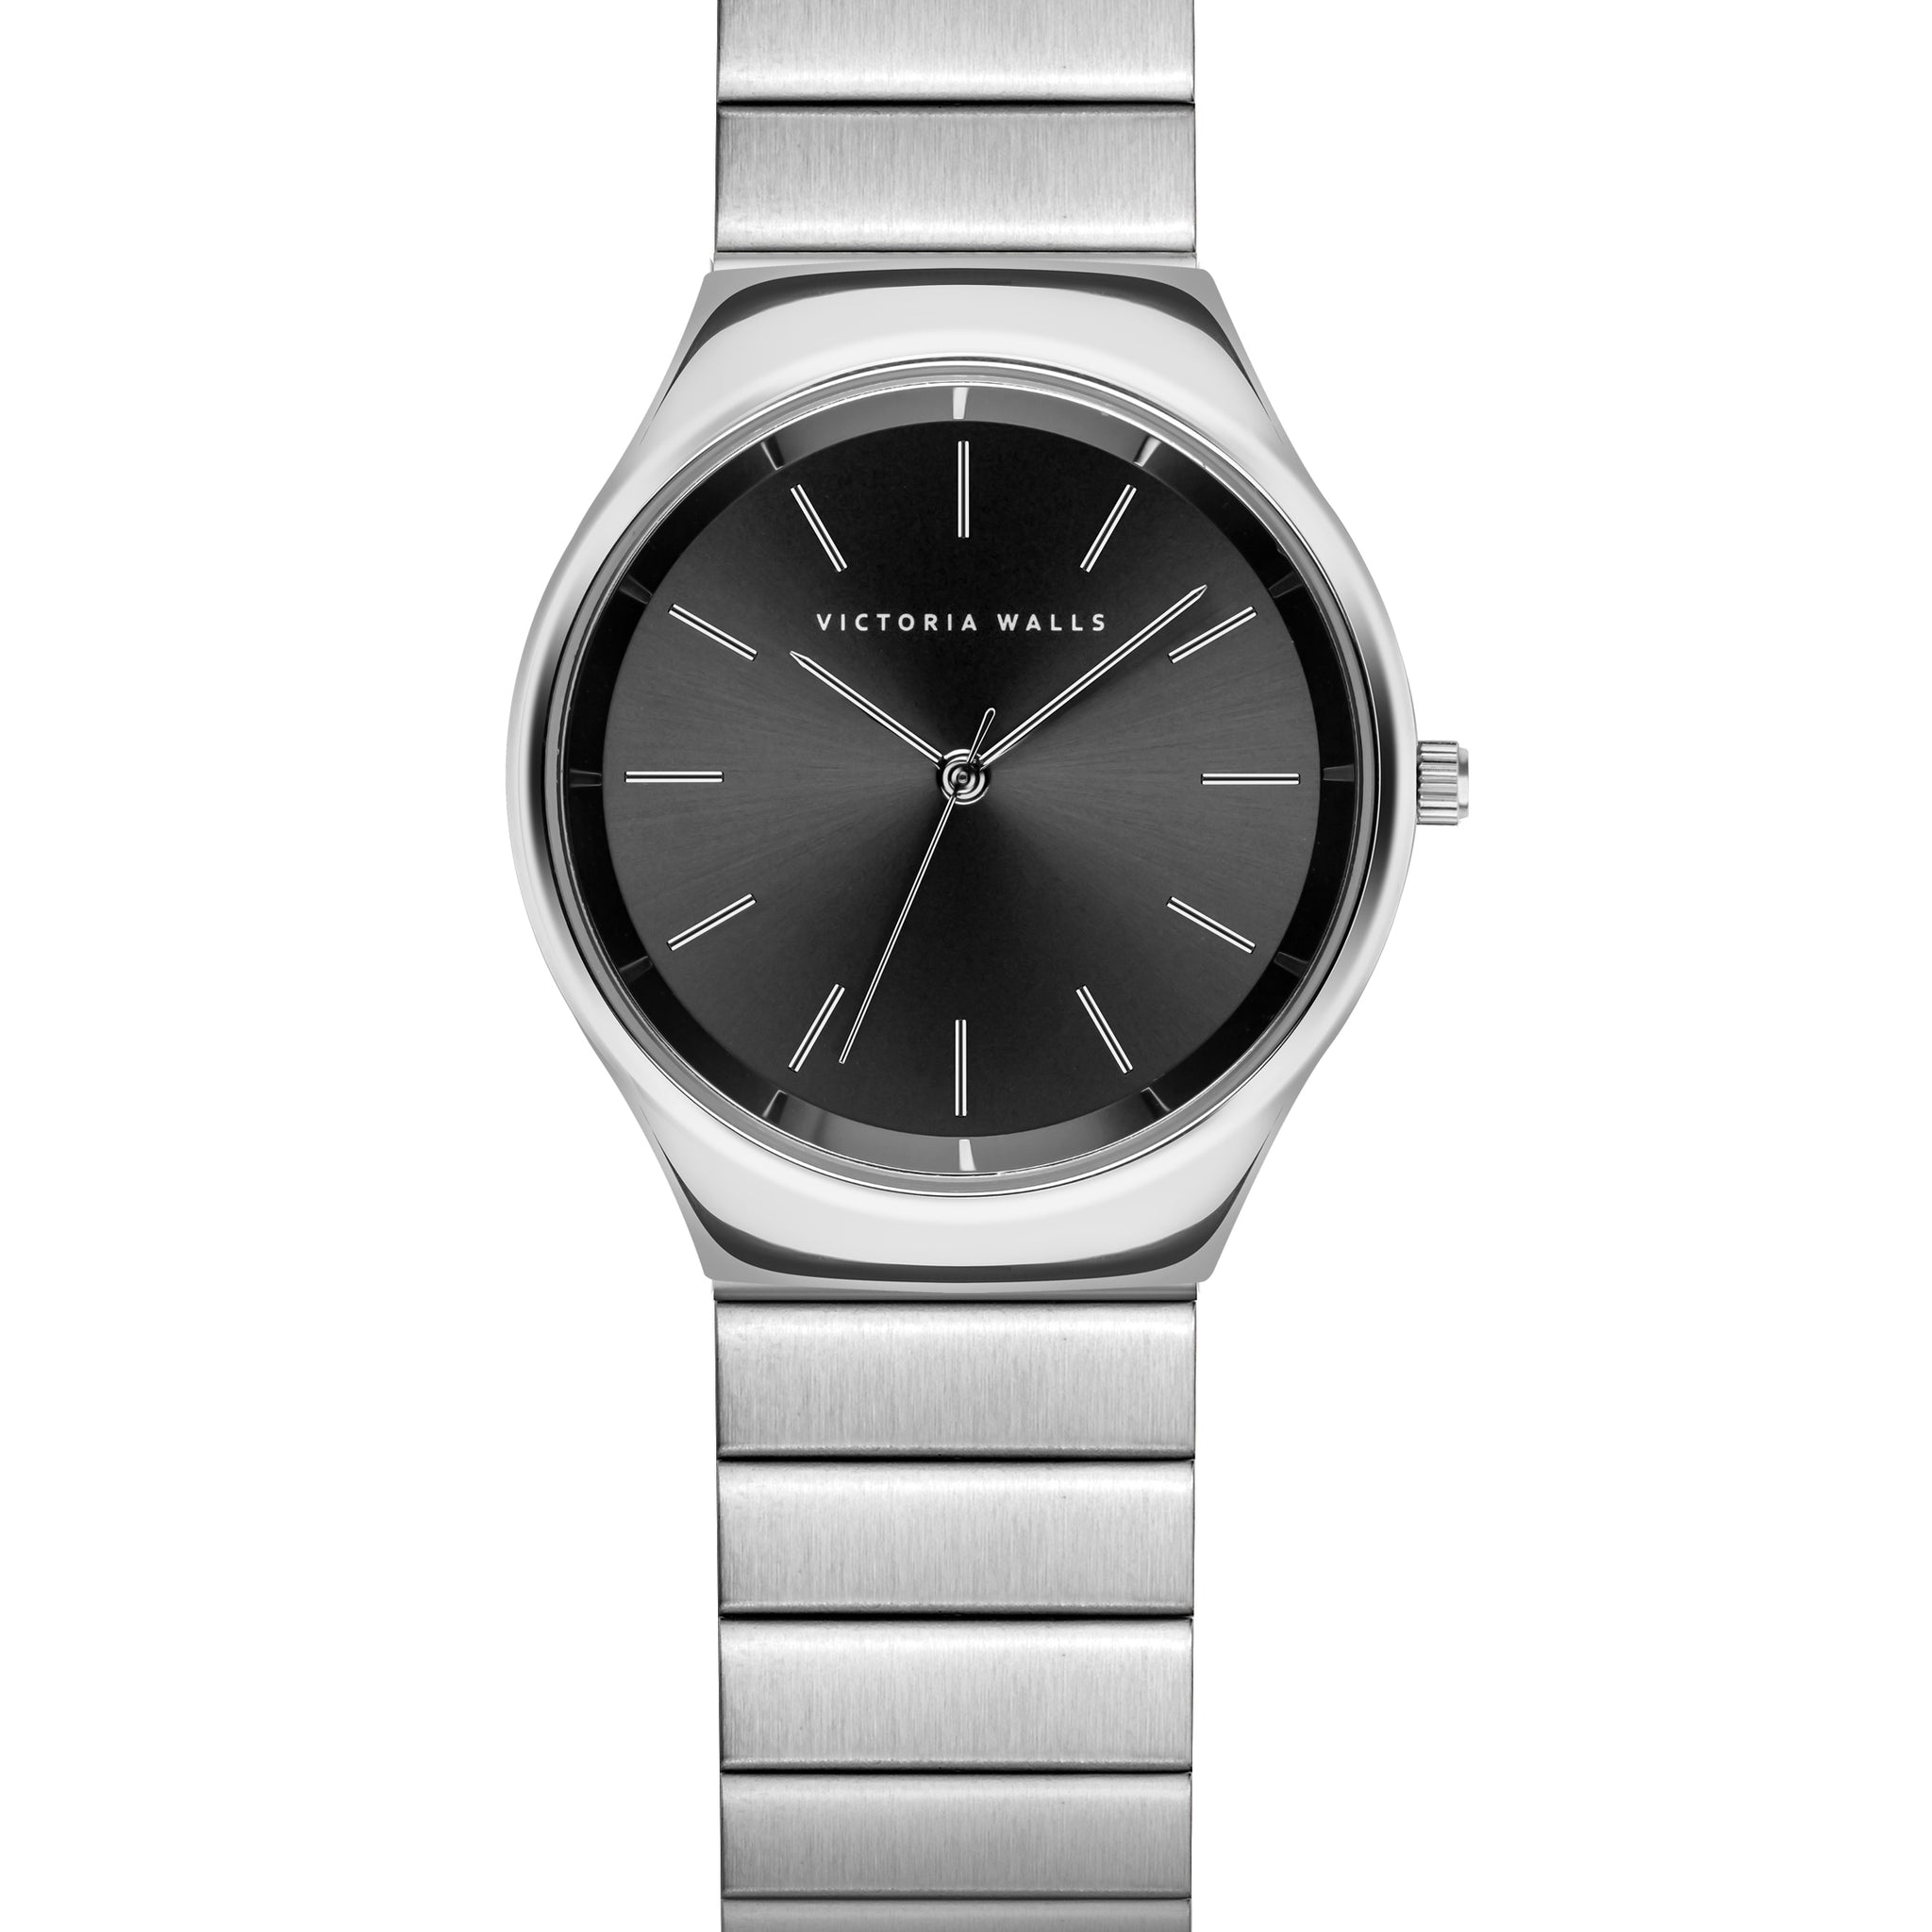 Quartz Silver Steel Watch